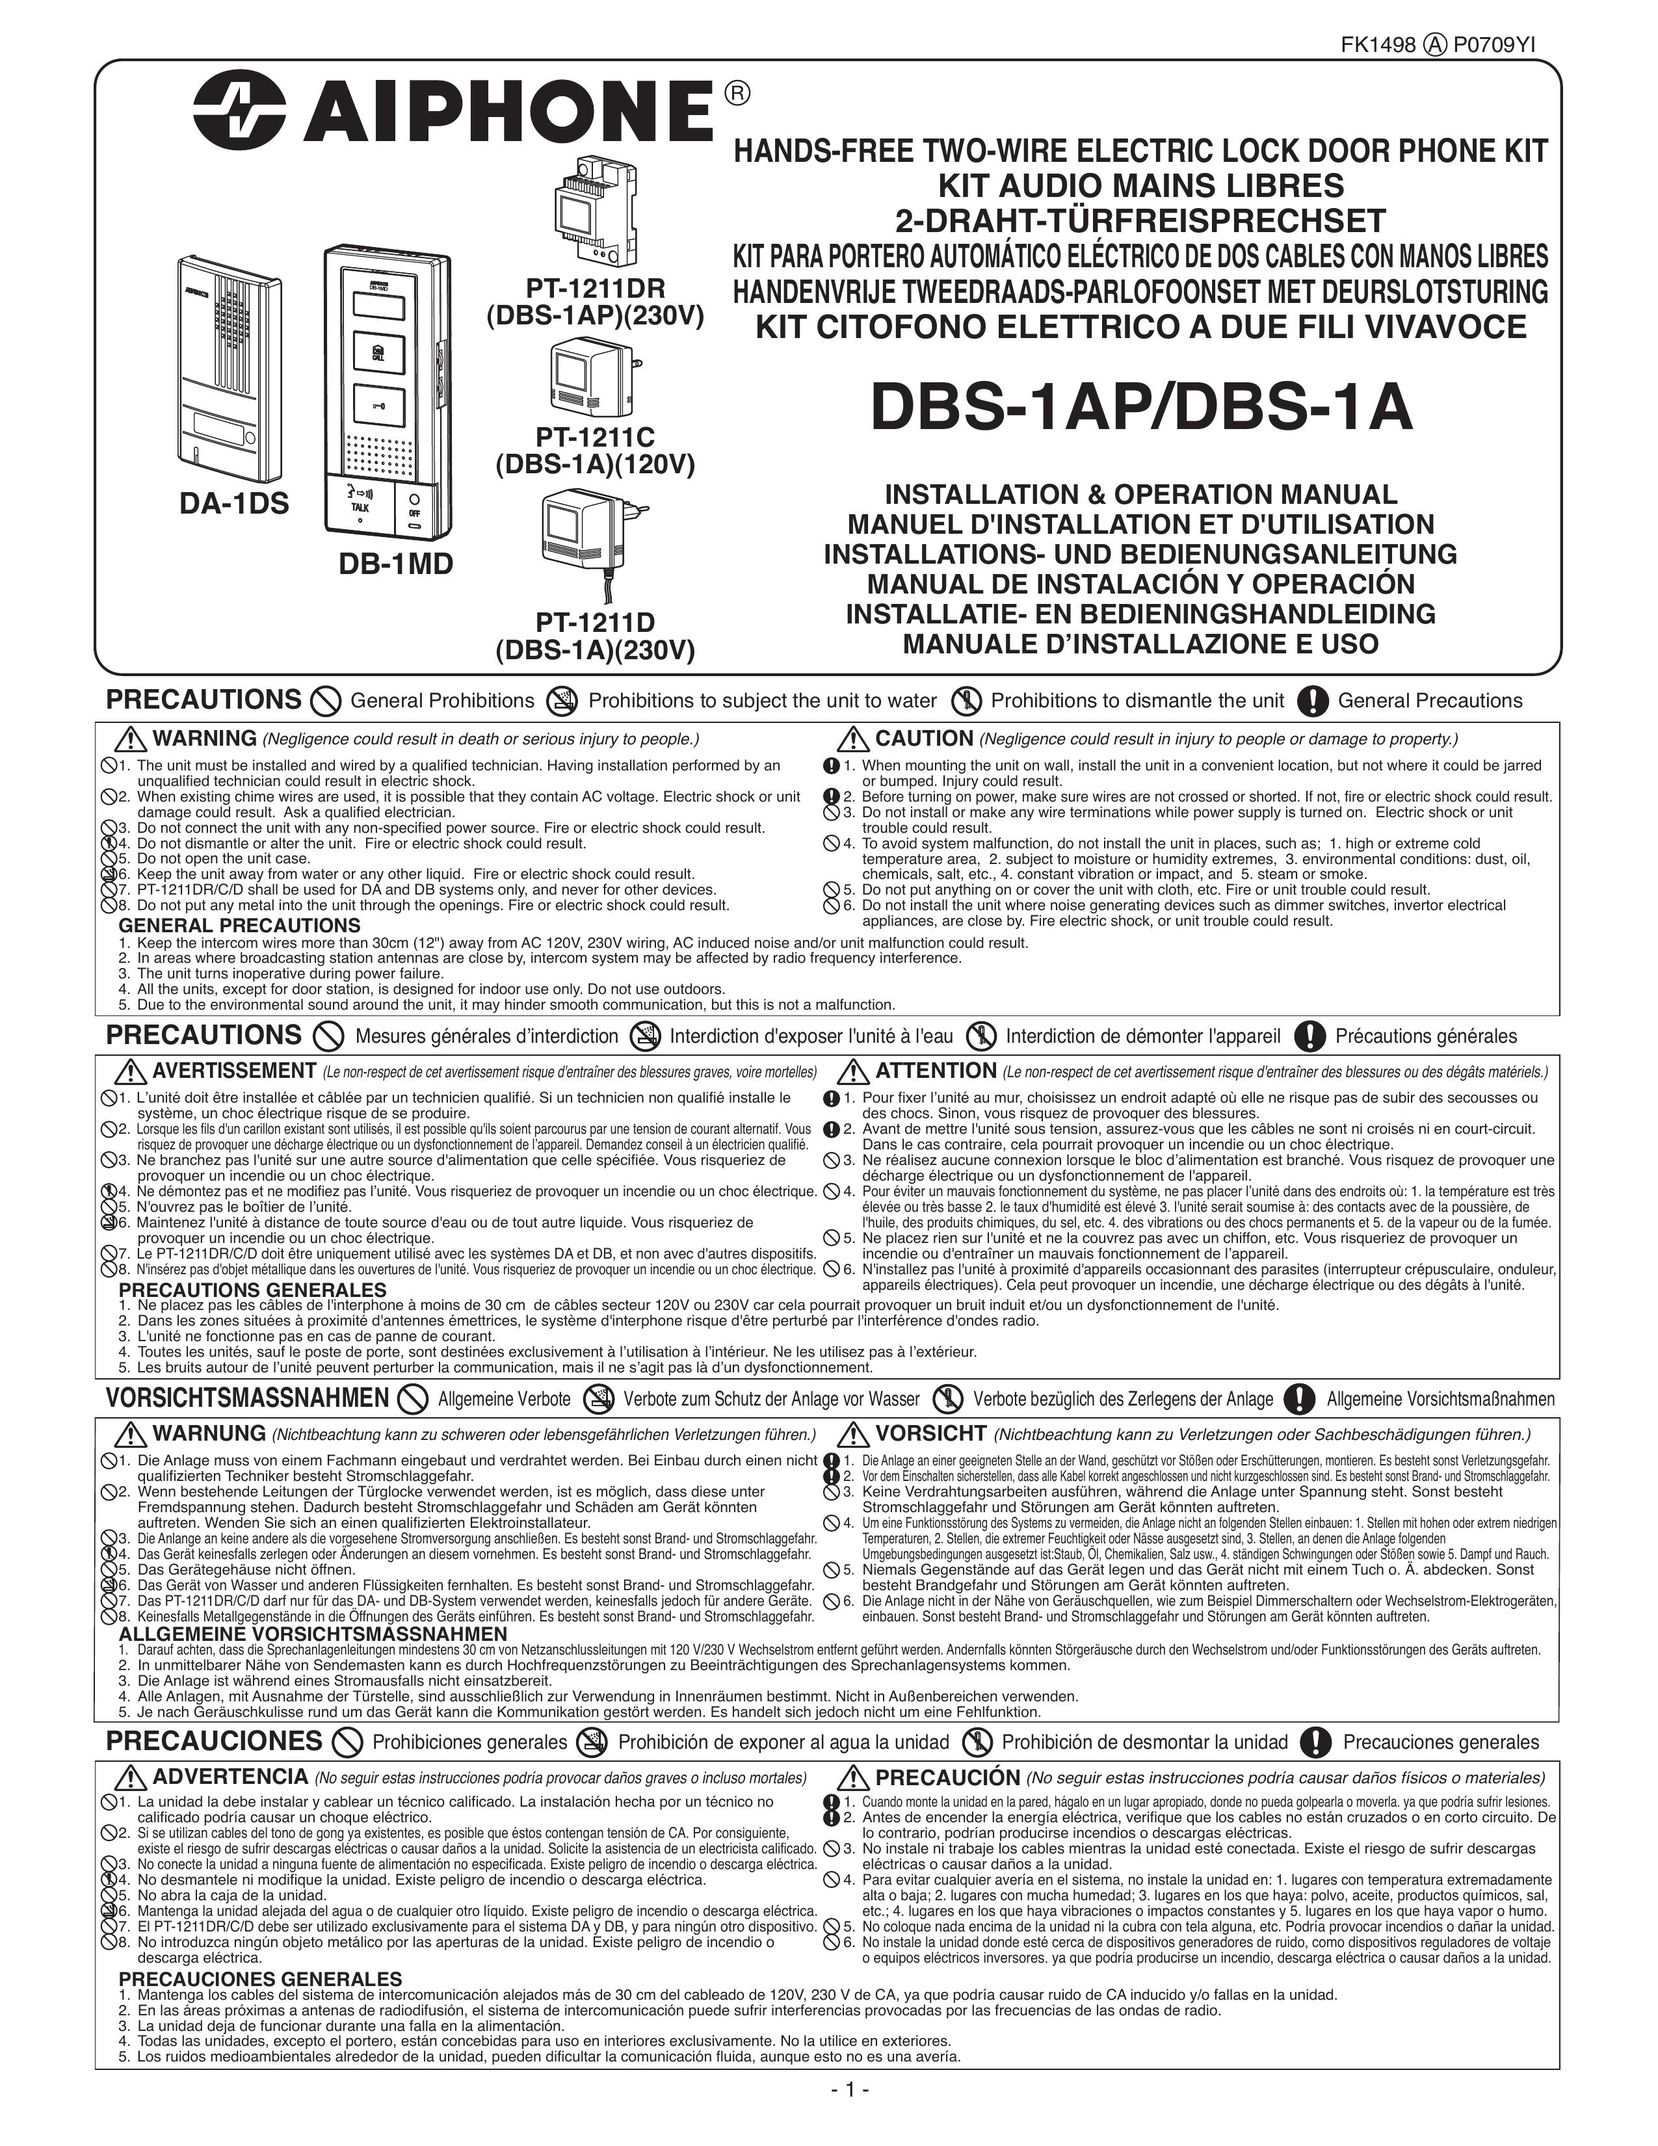 Aiphone DA-1DS Door User Manual